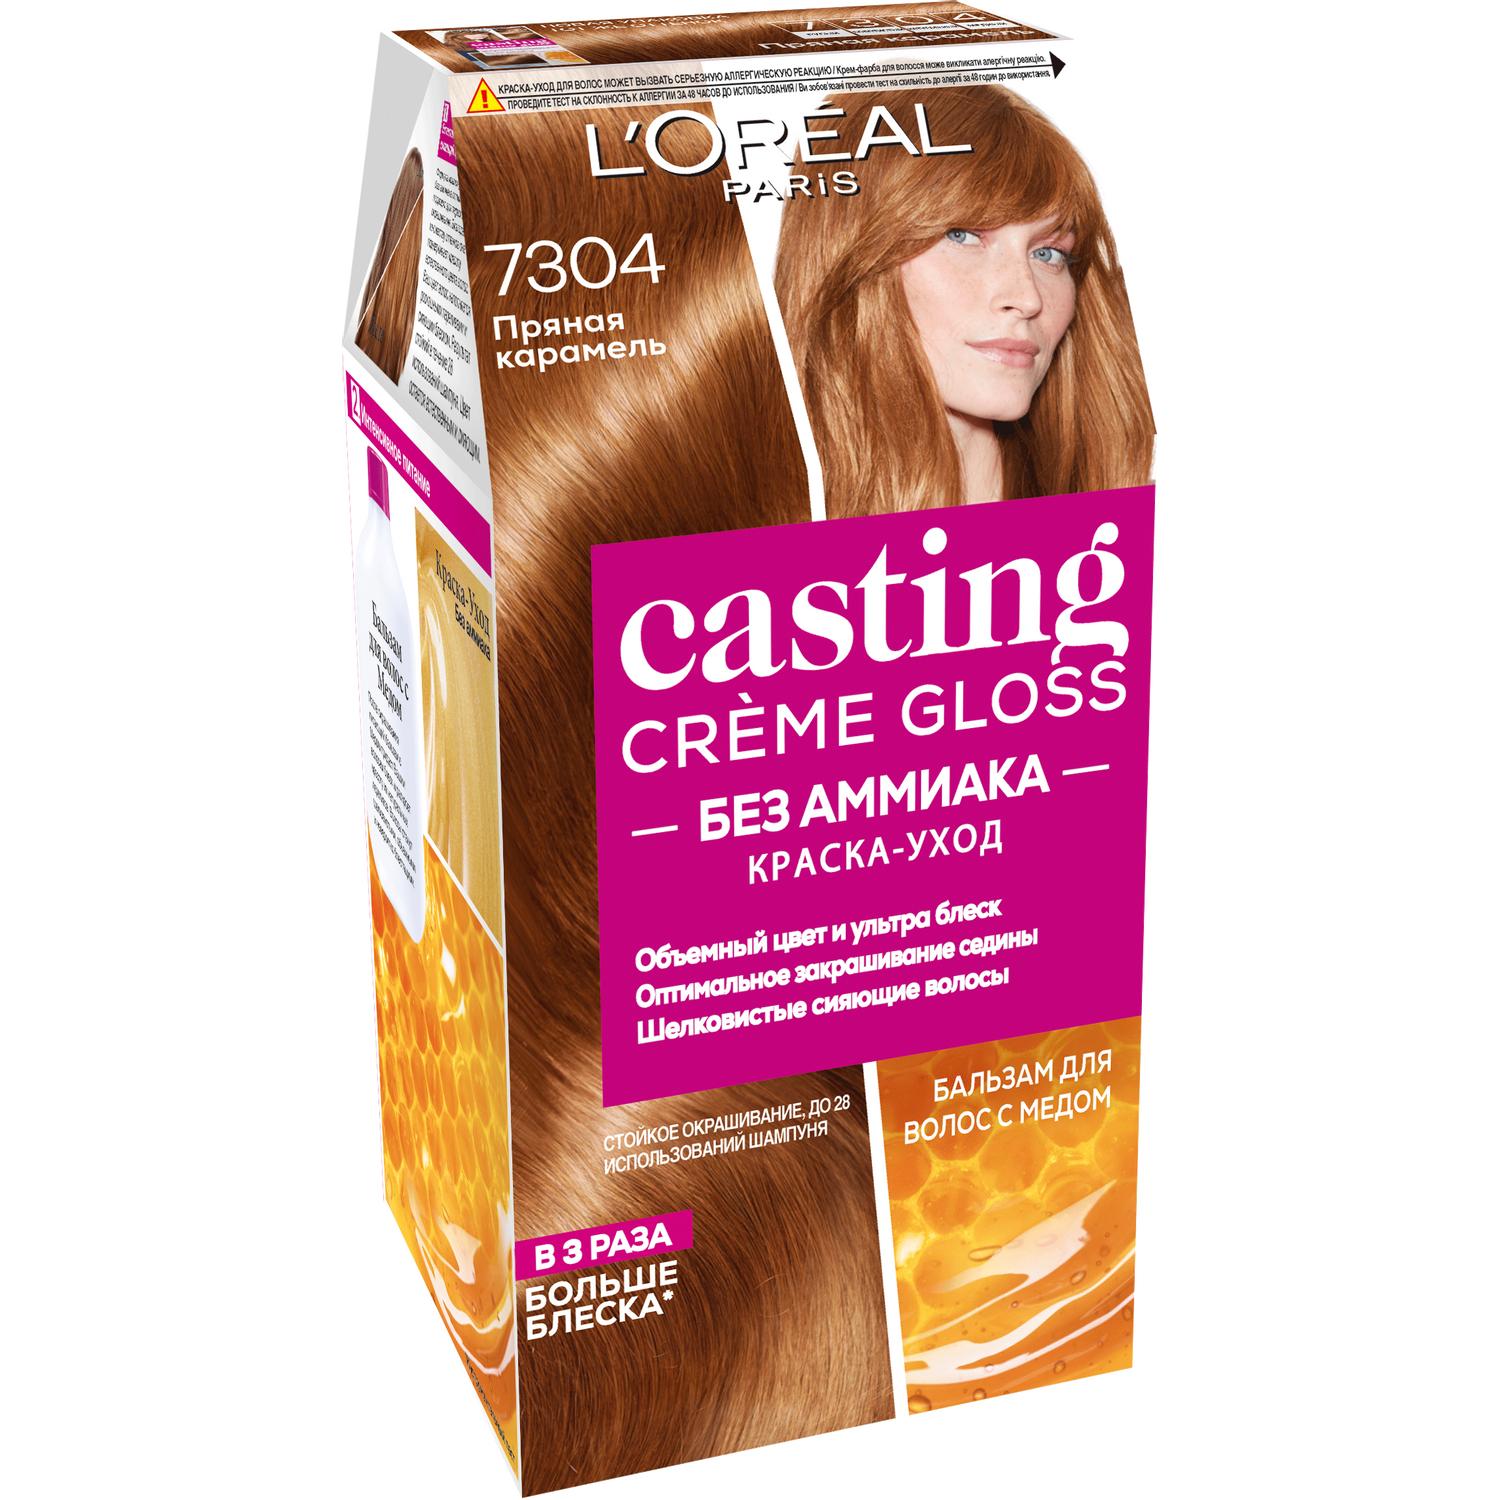 Краска L’Oreal Casting Creme Gloss 7304 254 мл Пряная карамель (A8005227) крем краска для волос аммиачная 4 шатен